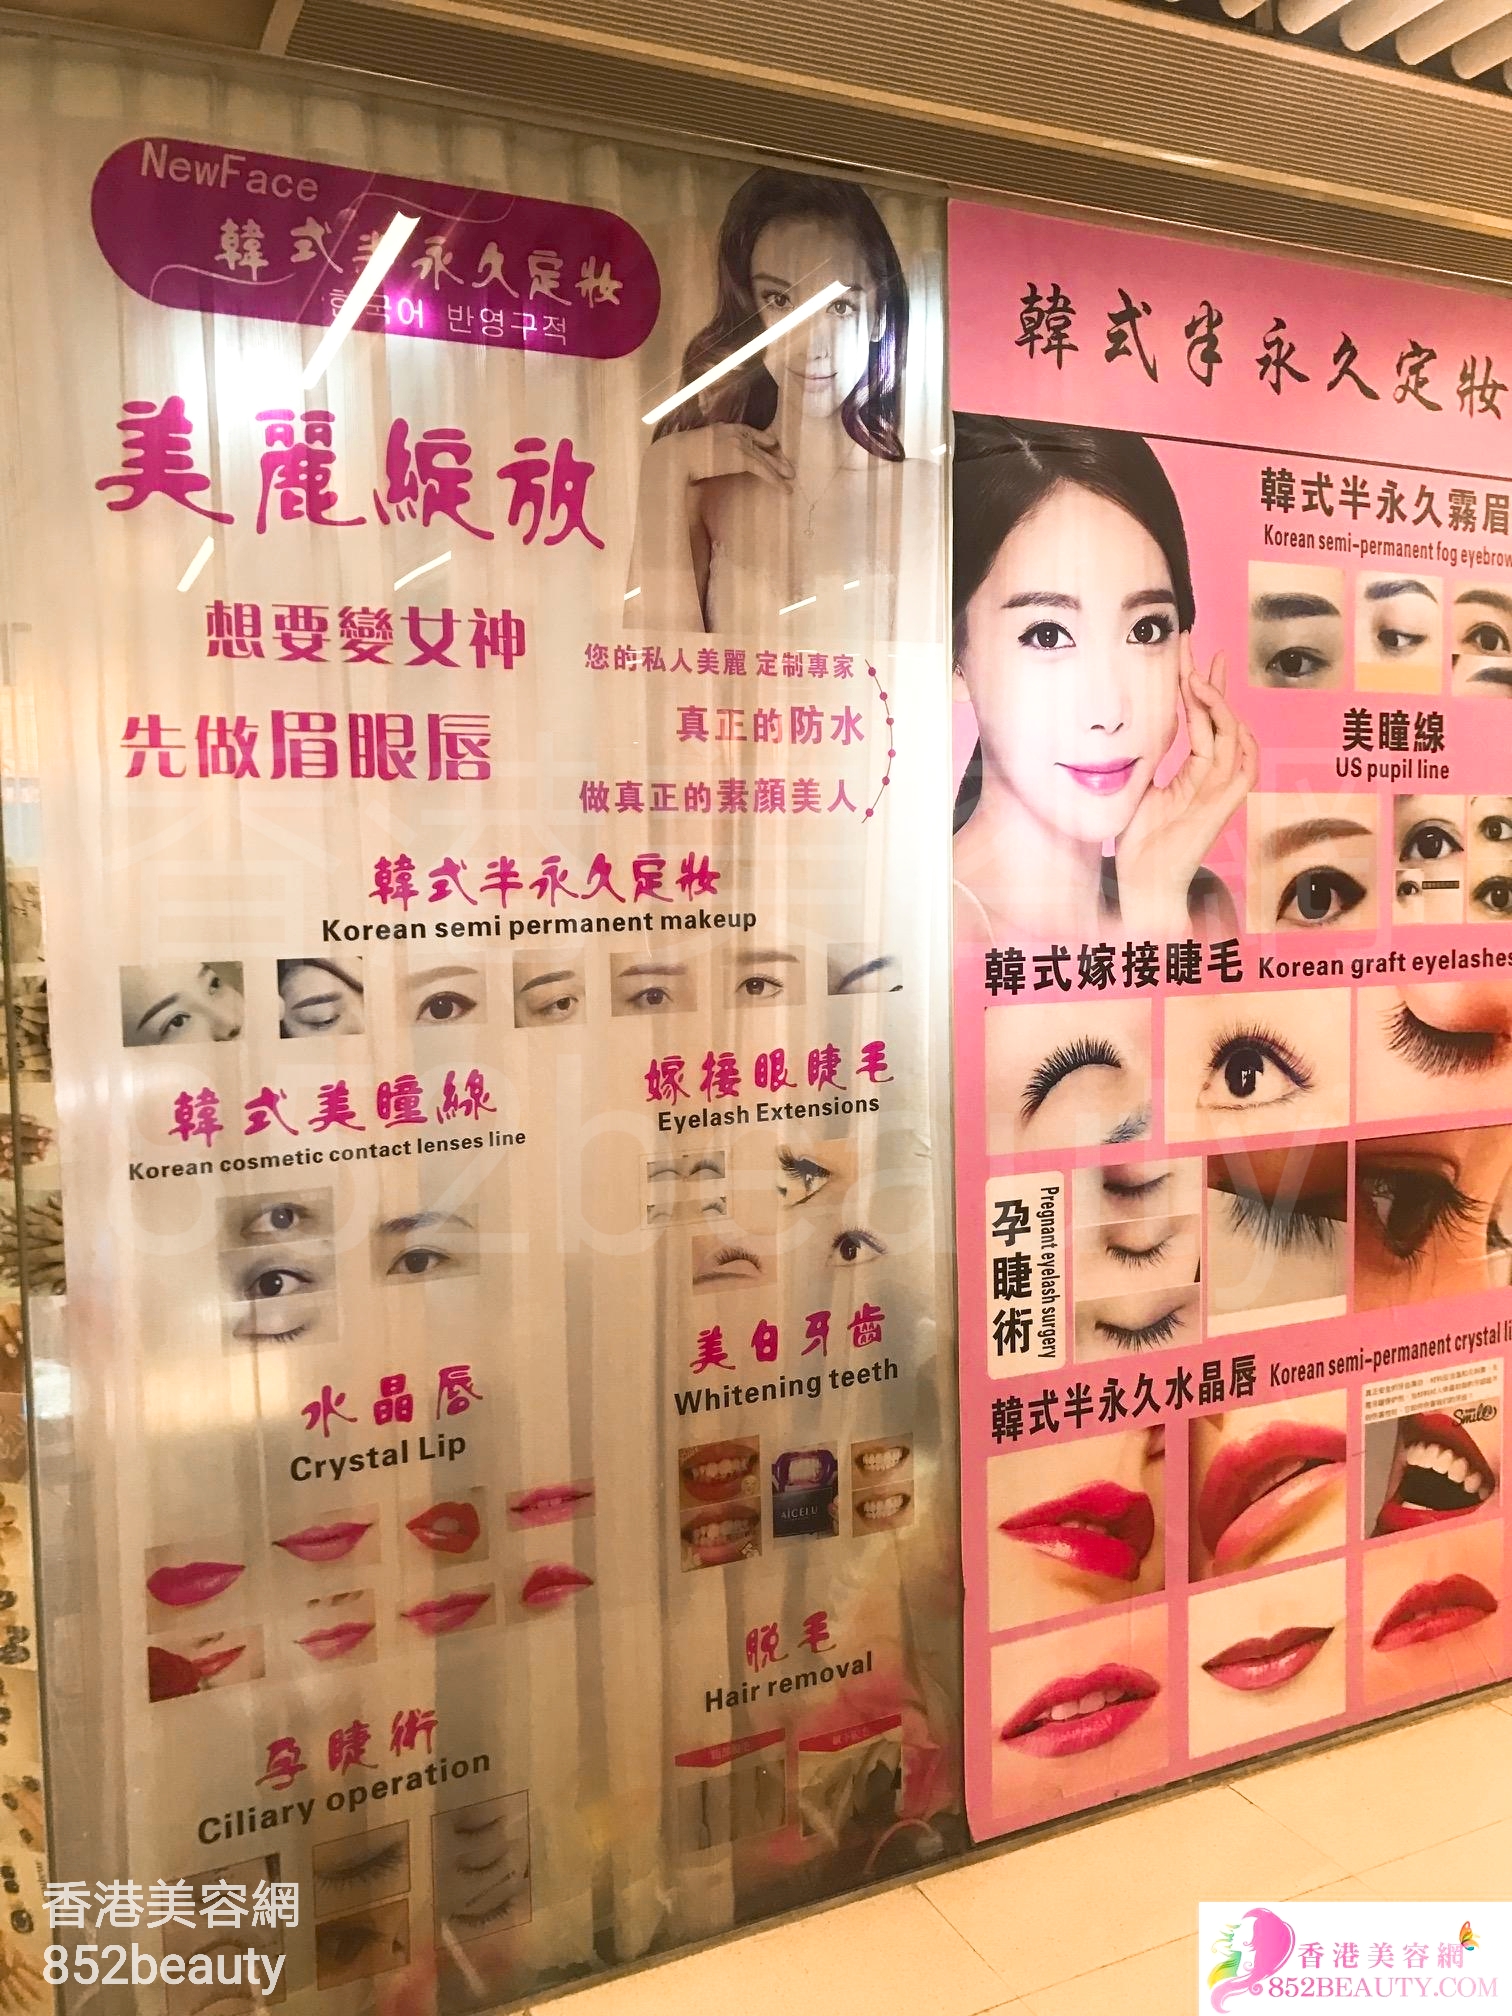 香港美容網 Hong Kong Beauty Salon 美容院 / 美容師: New face 韓式半永久定妝